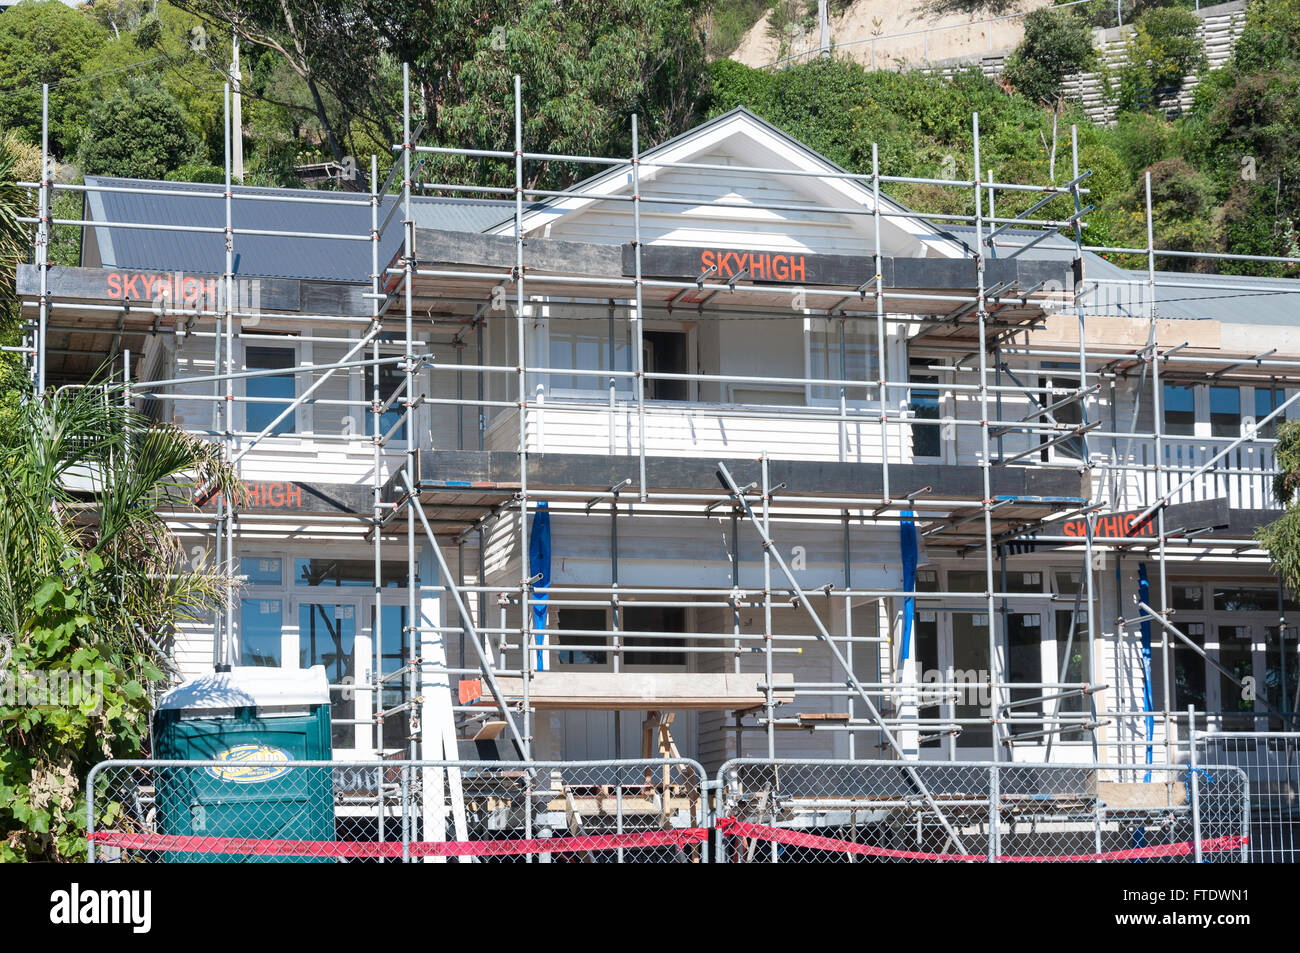 Maison front de mer en cours de rénovation après le séisme, Clifton Terrace, Clifton, Sumner, Christchurch, Canterbury, Nouvelle-Zélande Région Banque D'Images